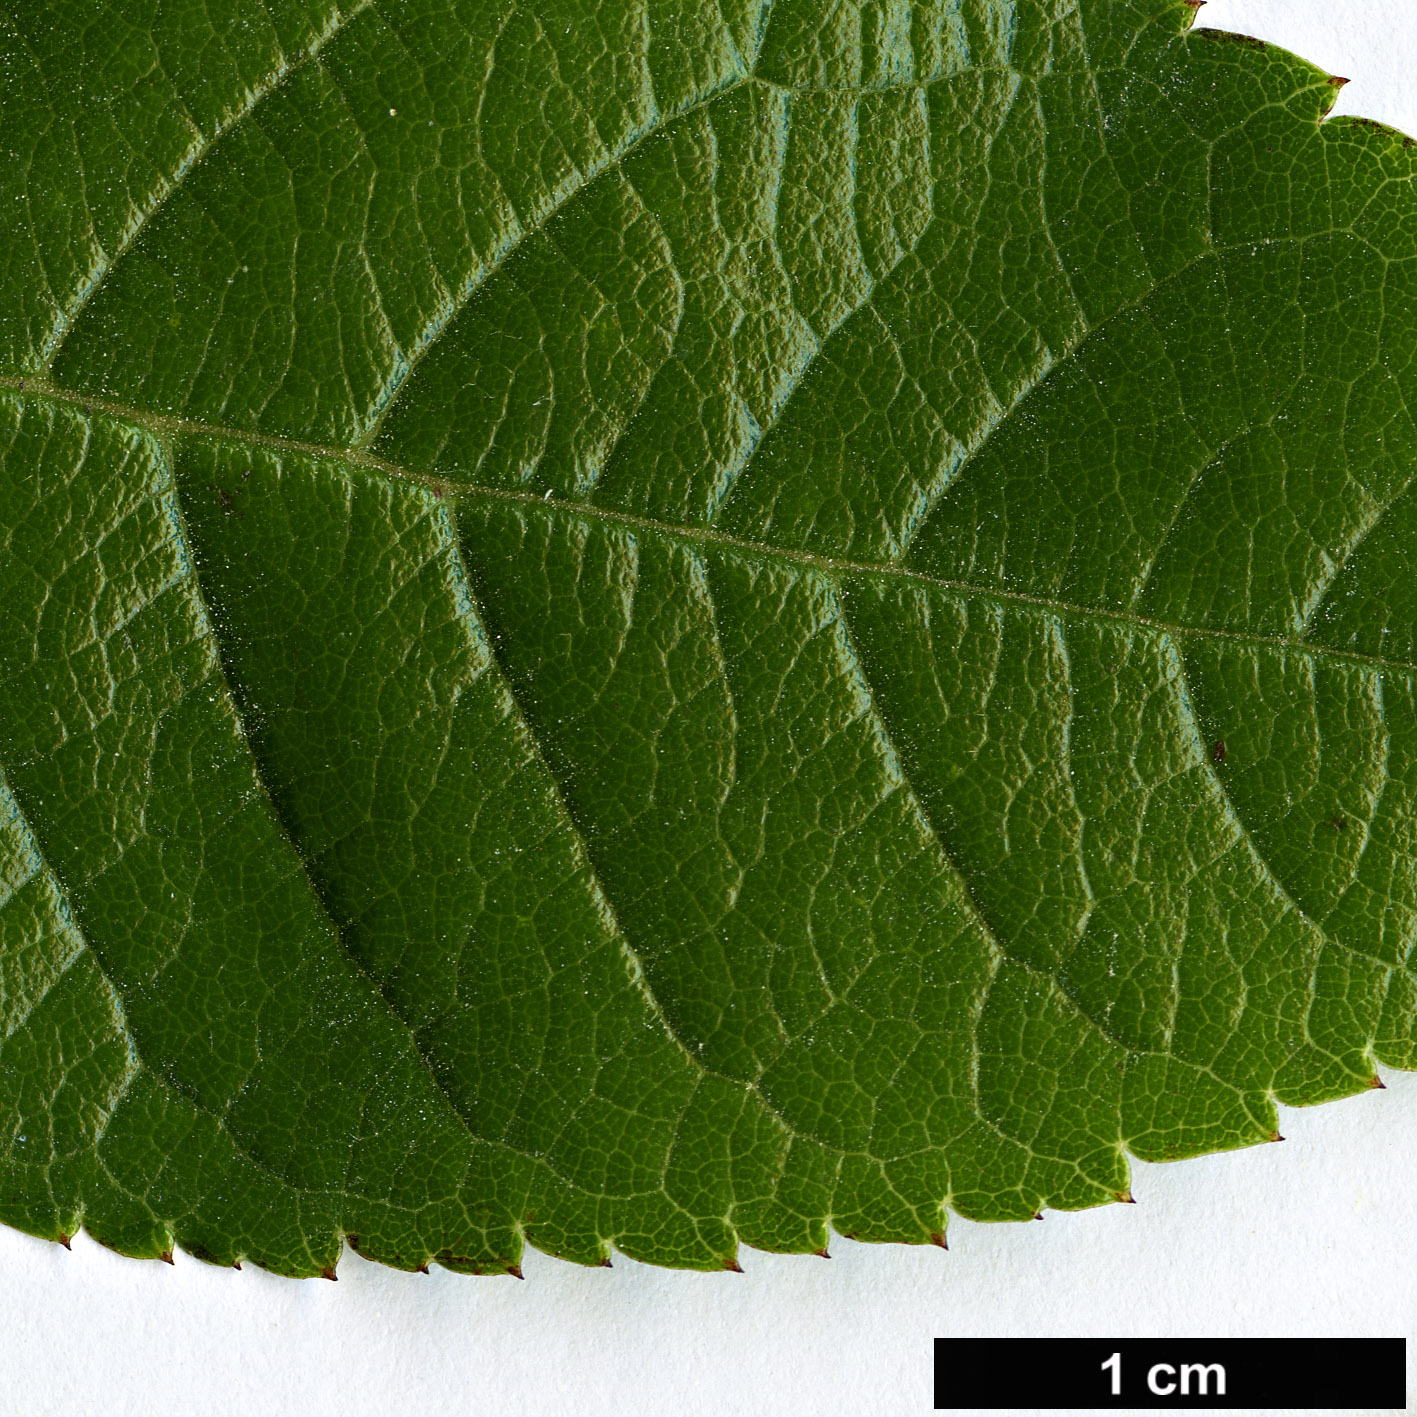 High resolution image: Family: Rosaceae - Genus: Rosa - Taxon: longicuspis